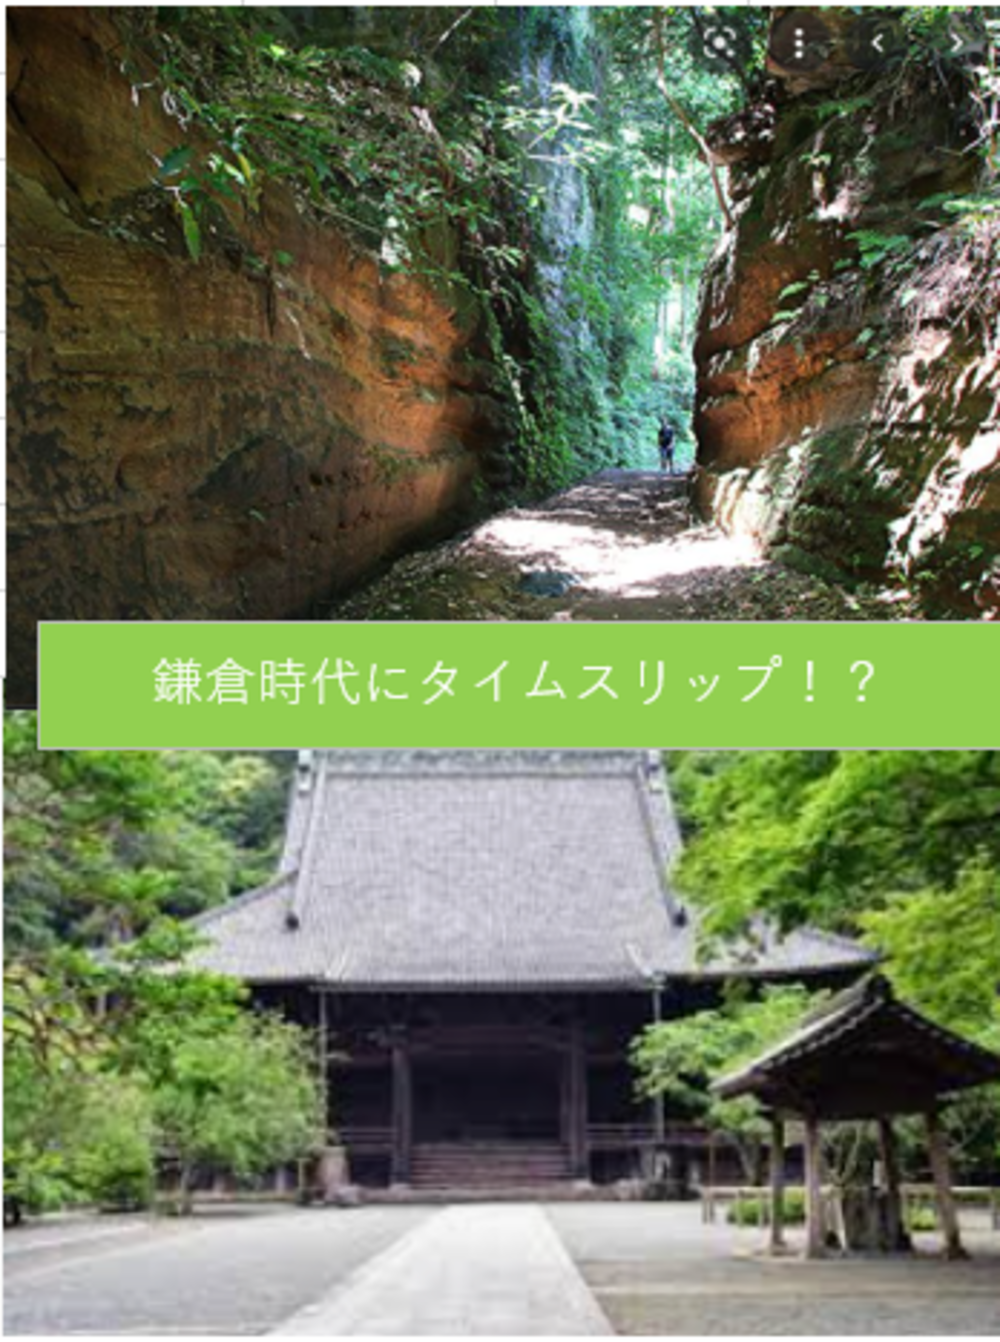 【切通と寺社めぐり】中世鎌倉時代を自然、寺社をめぐって、タイムスリップ体験しよう